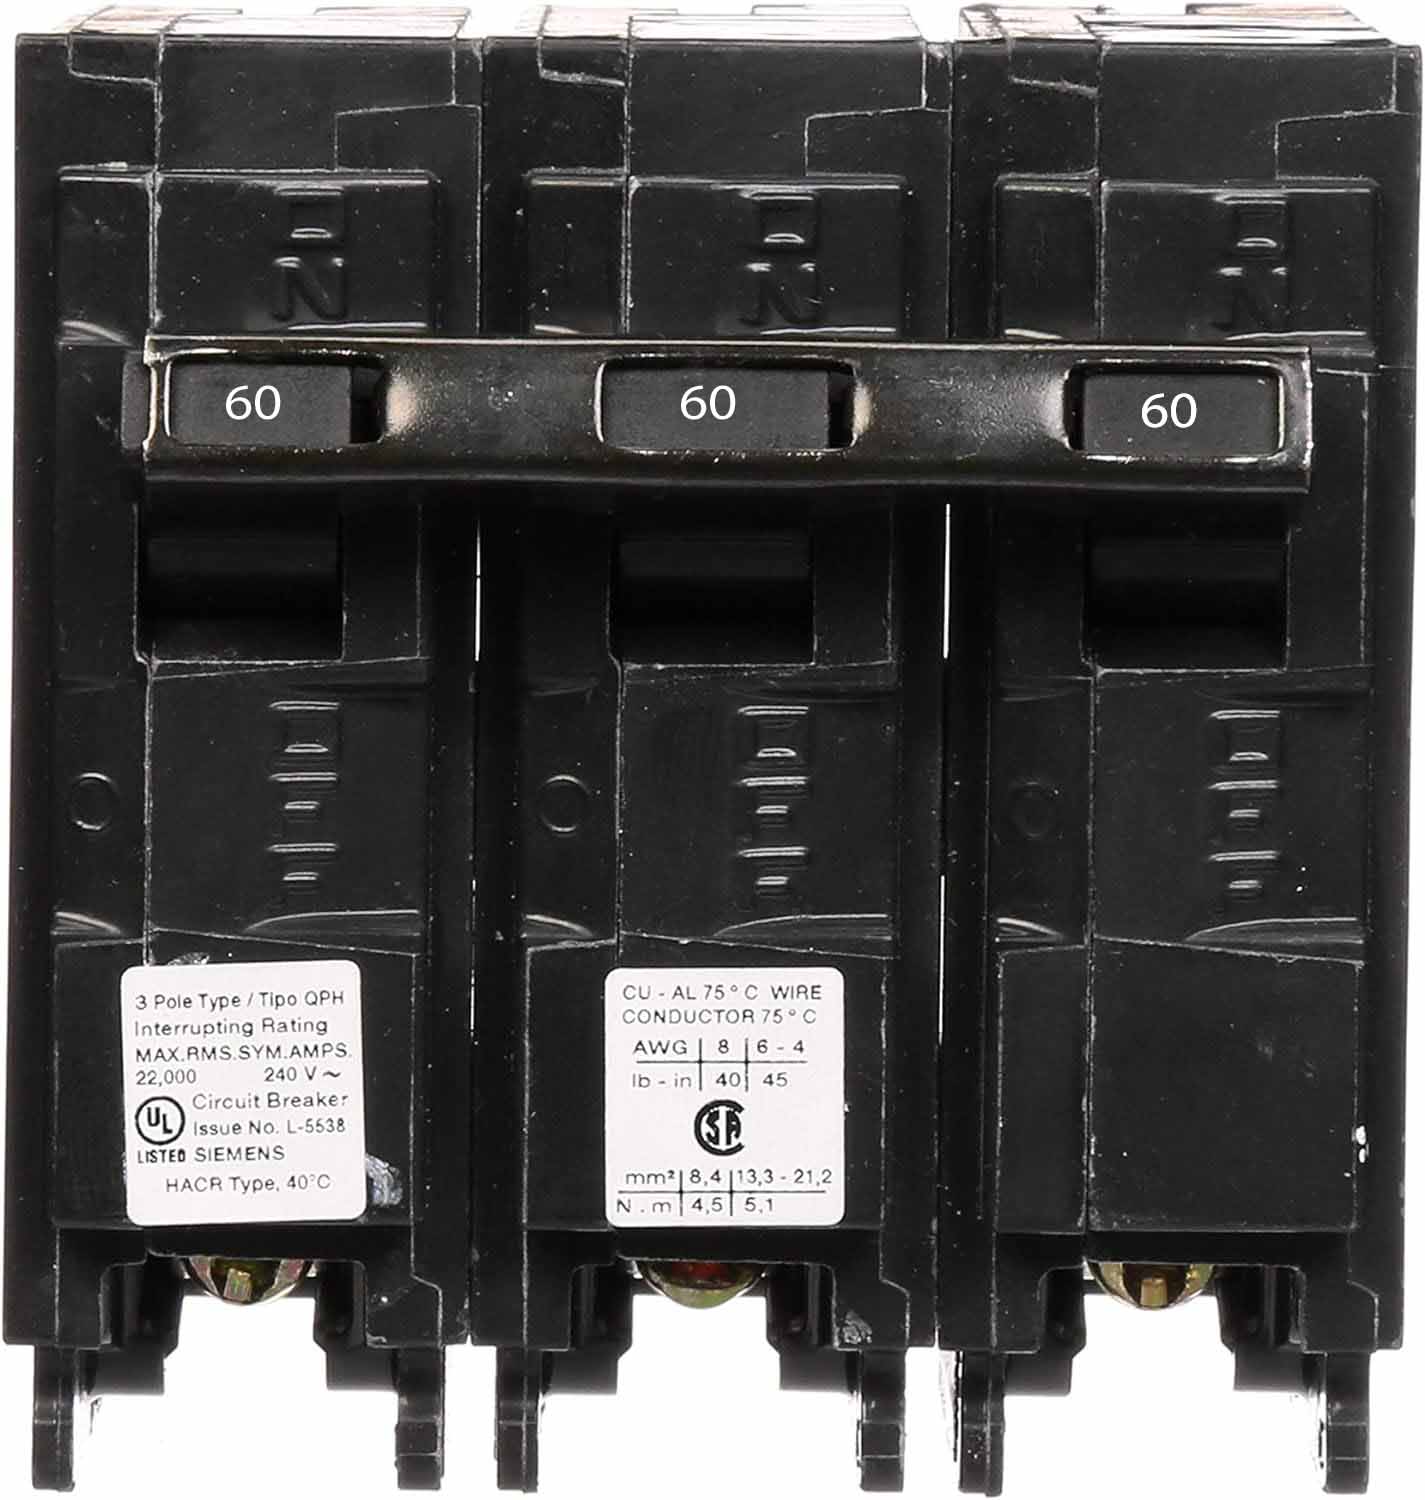 Q360H - Siemens 60 Amp 3 Pole 240 Volt Molded Case Circuit Breaker